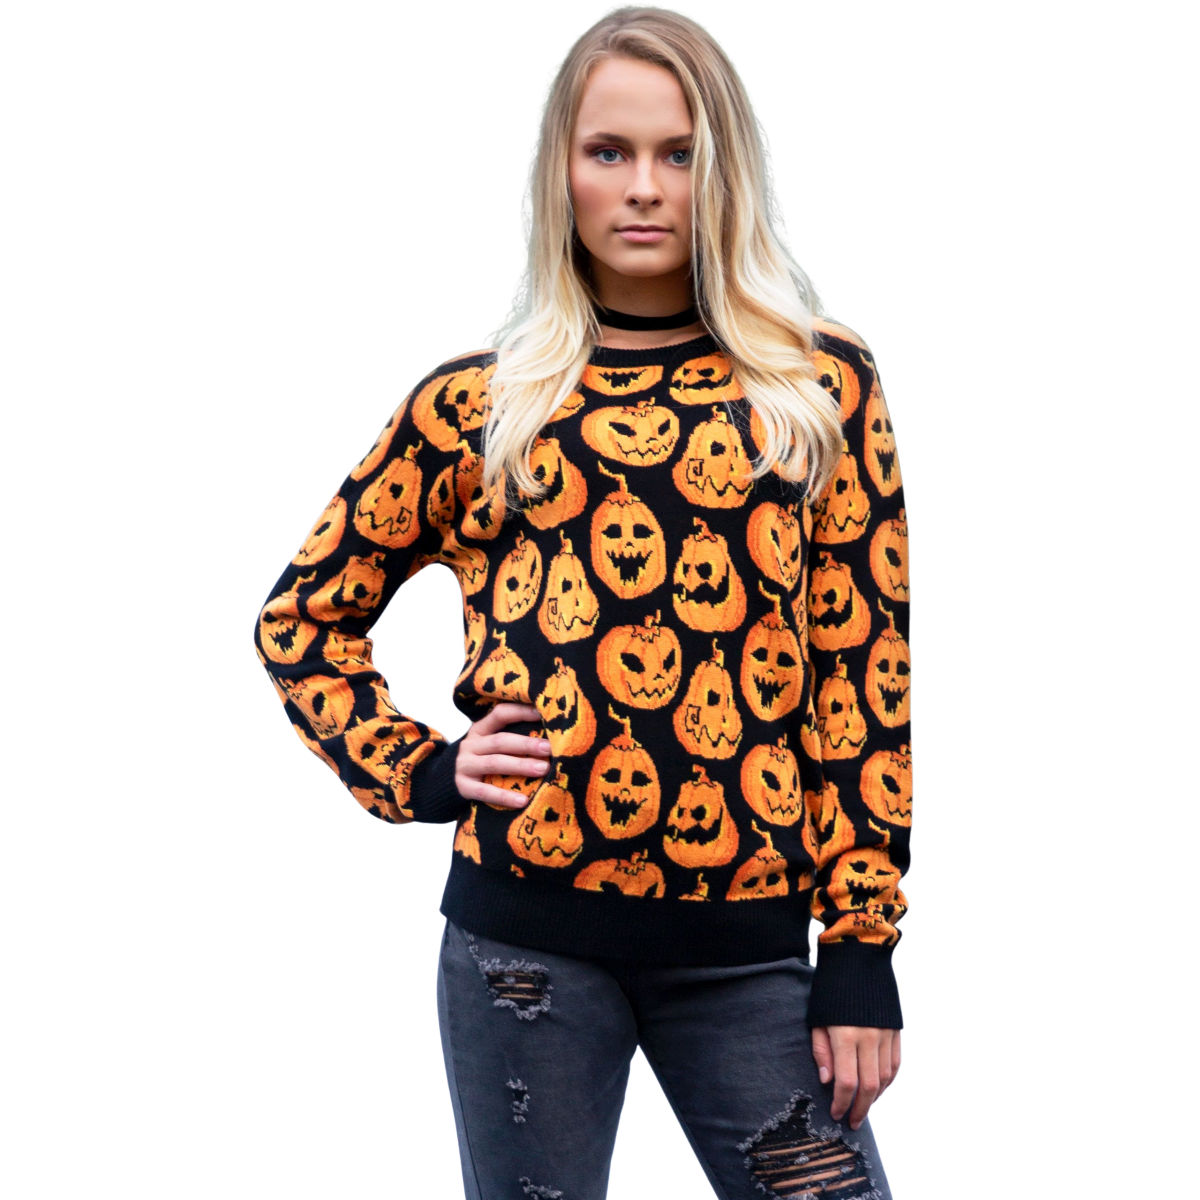 Pumpkin Frenzy Adult Halloween Sweater